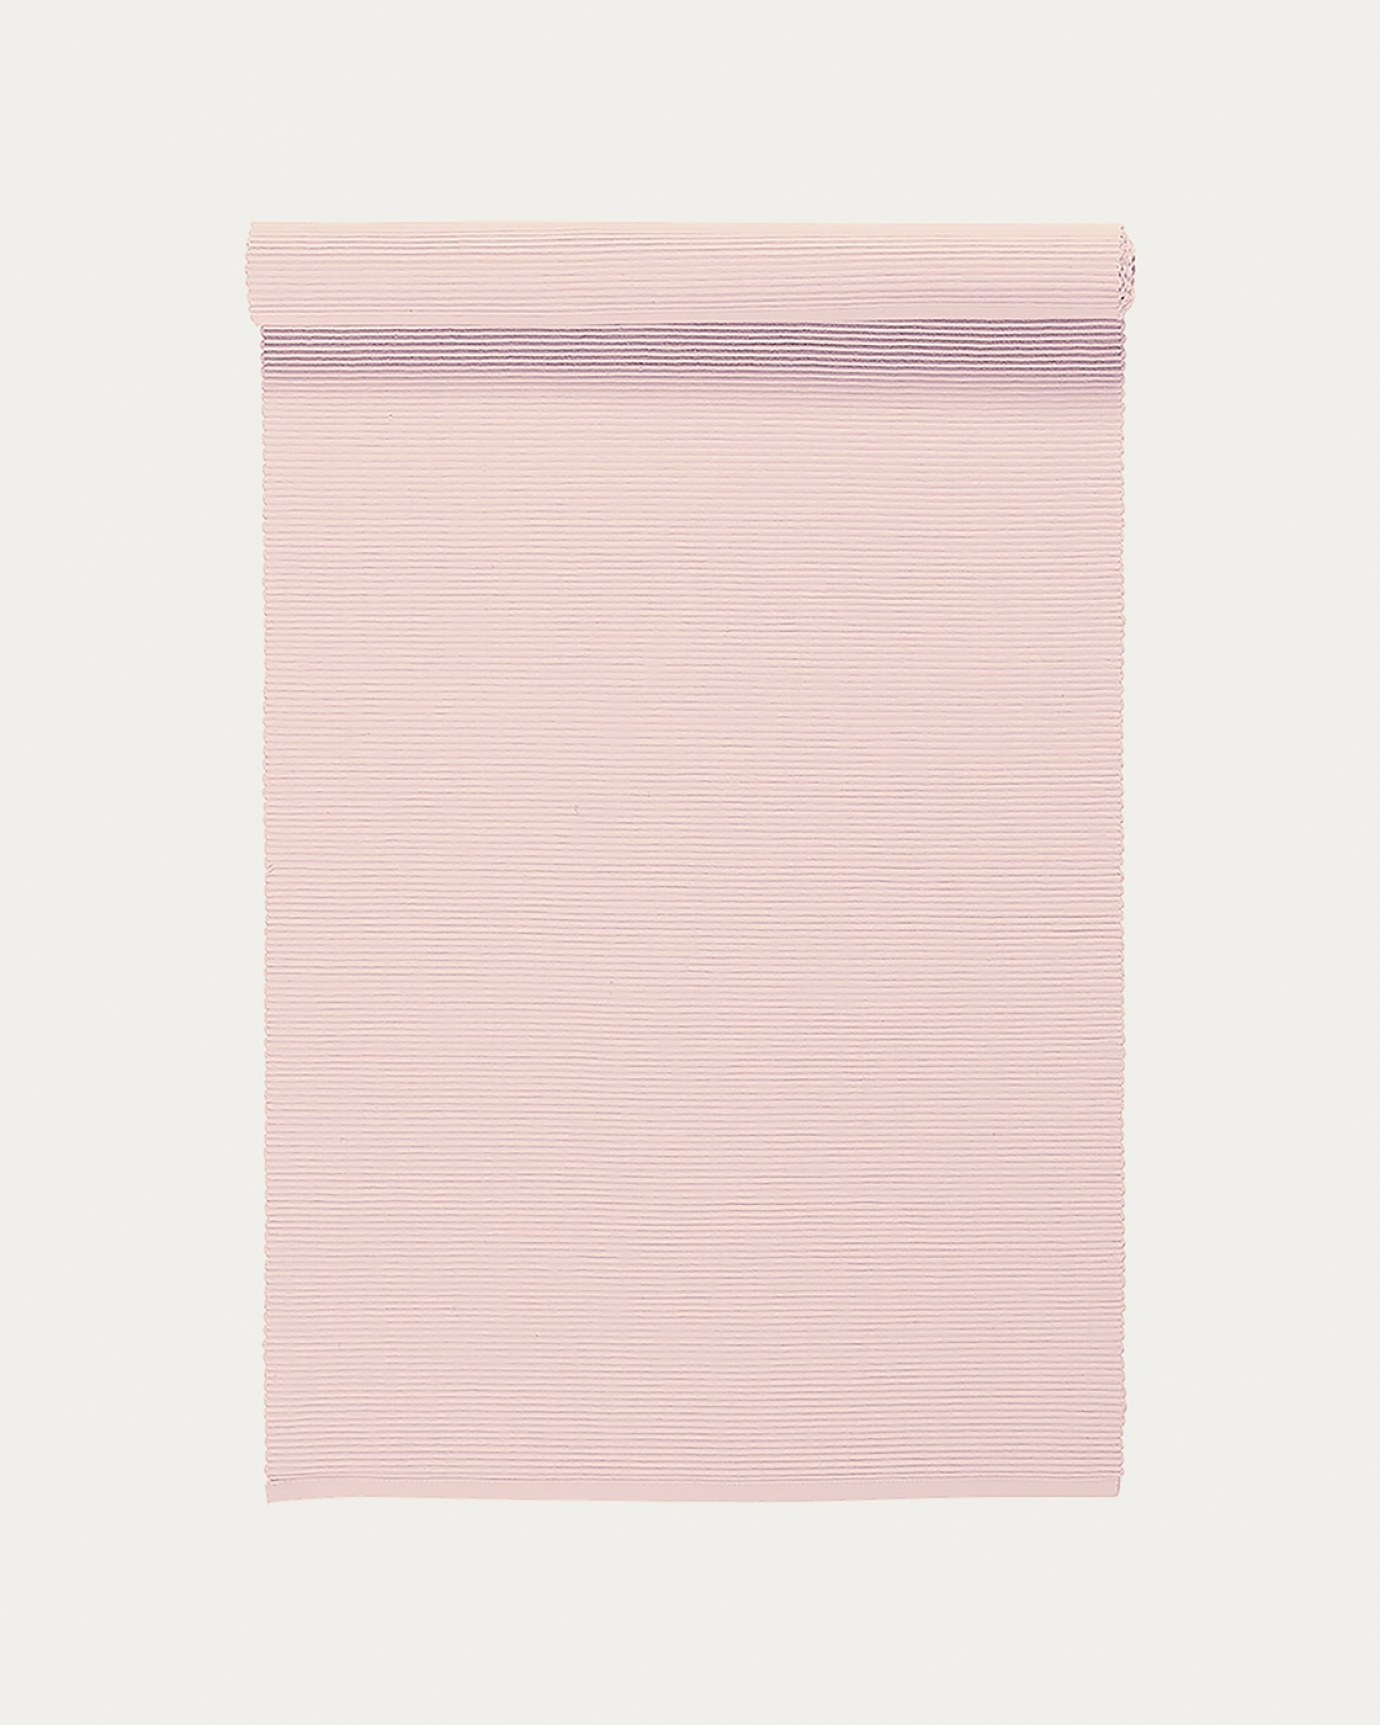 Image du produit chemin de table UNI rose pastel en coton doux de qualité côtelée de LINUM DESIGN. Taille 45 x 150 cm.